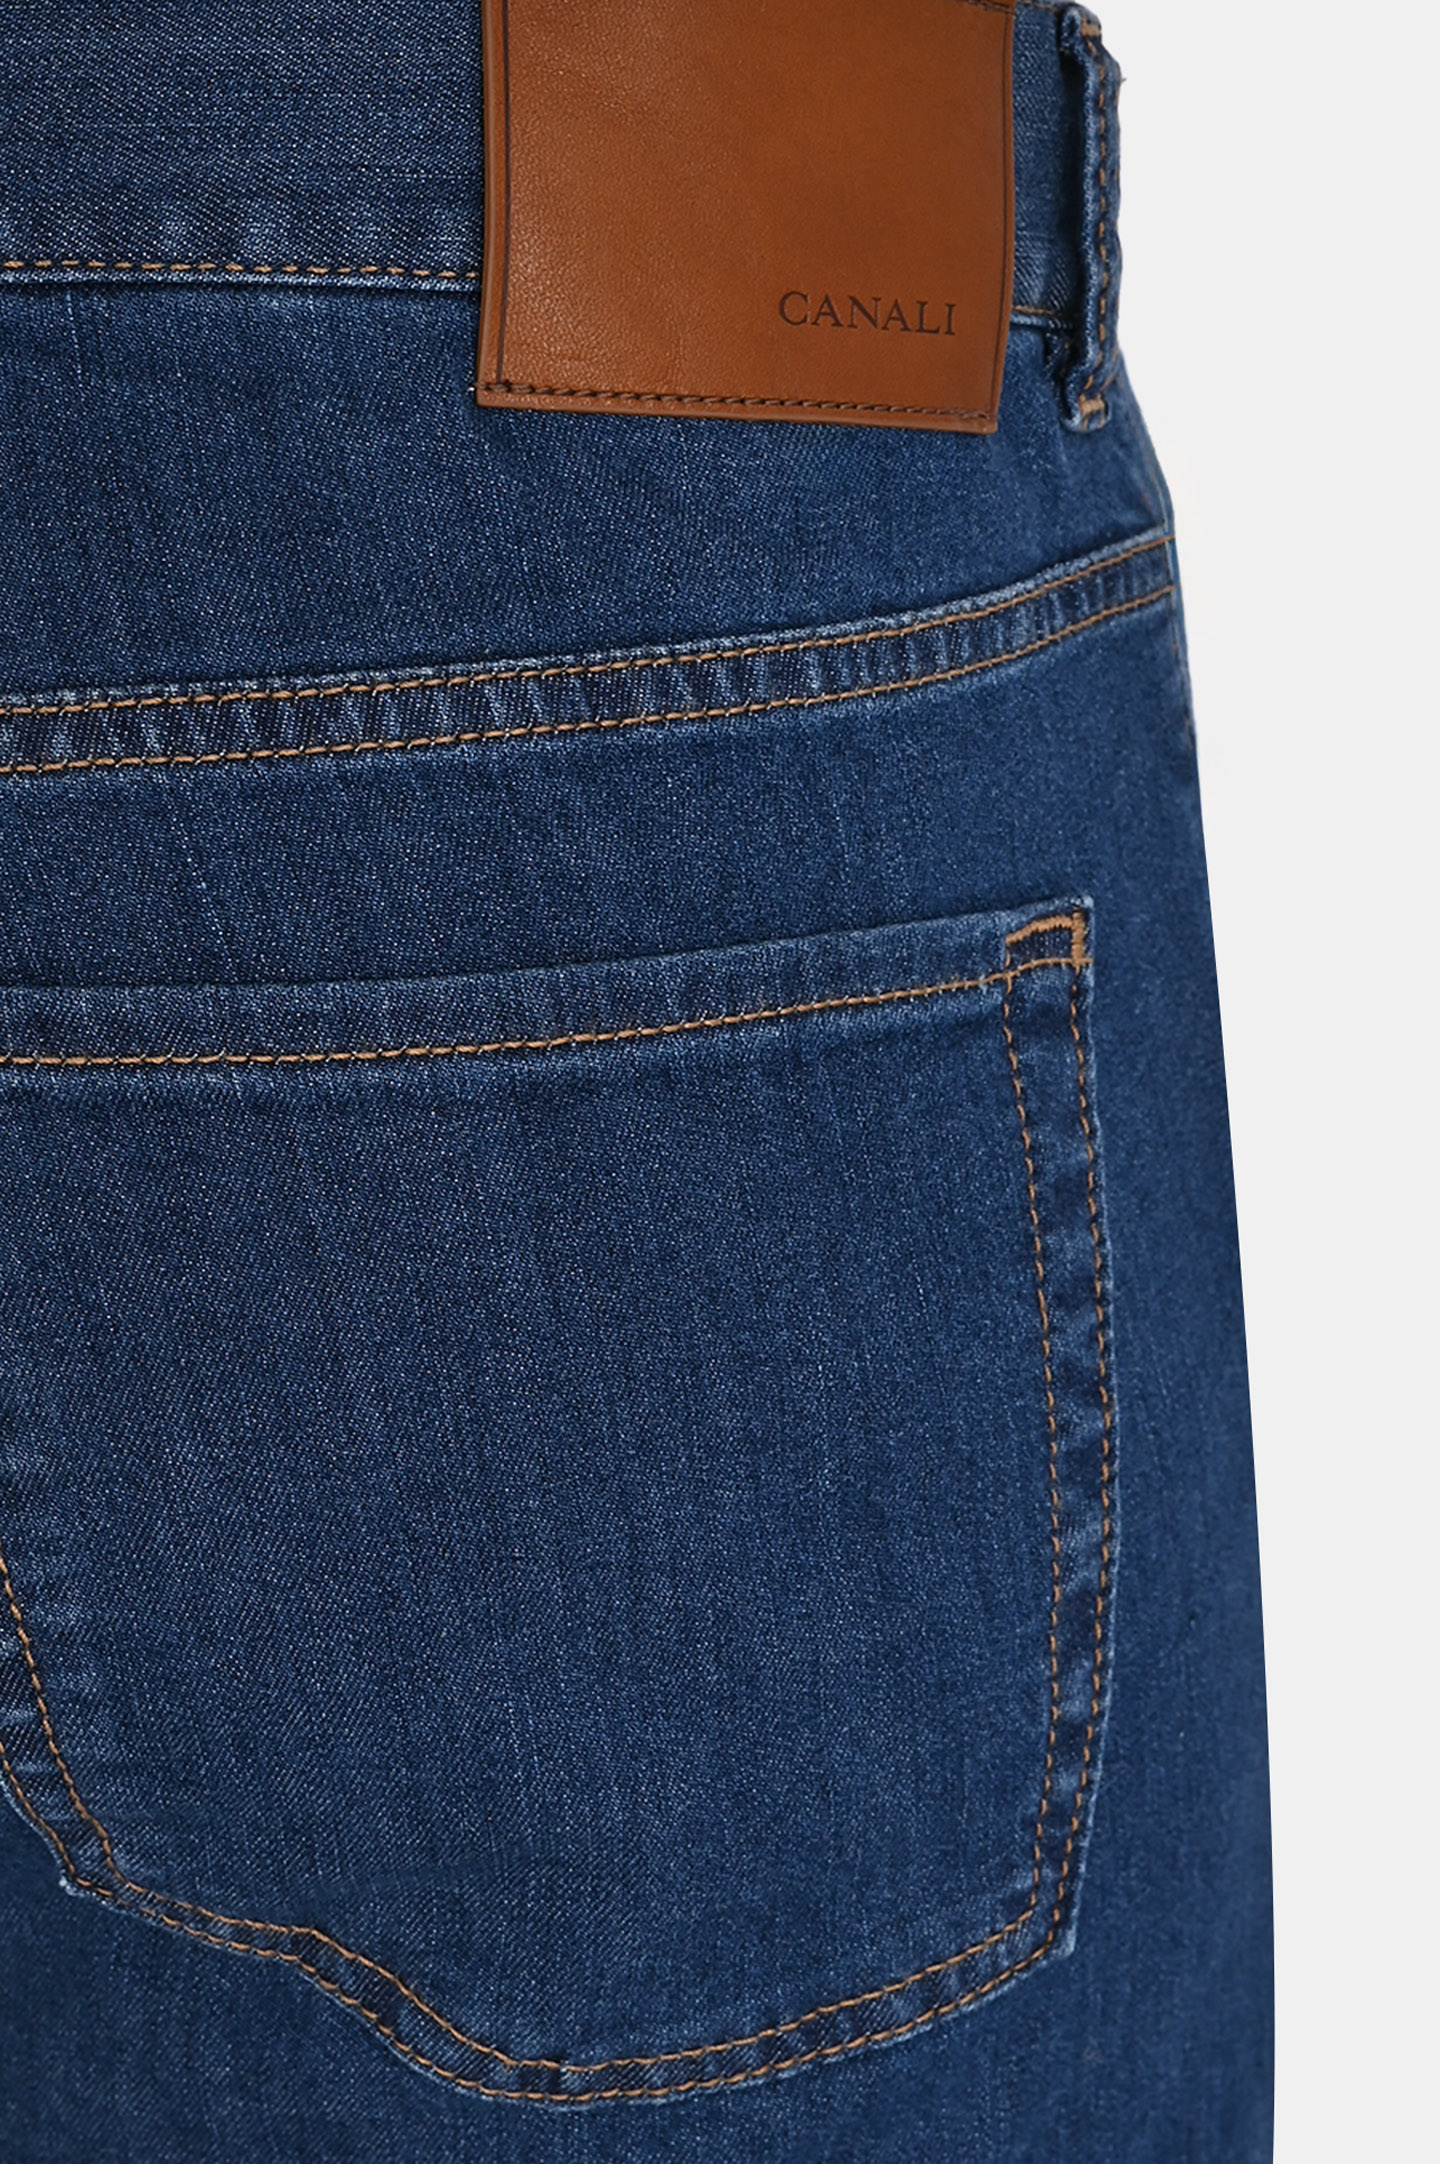 Прямые базовые джинсы CANALI PD00400 91700/1, цвет: Синий, Мужской